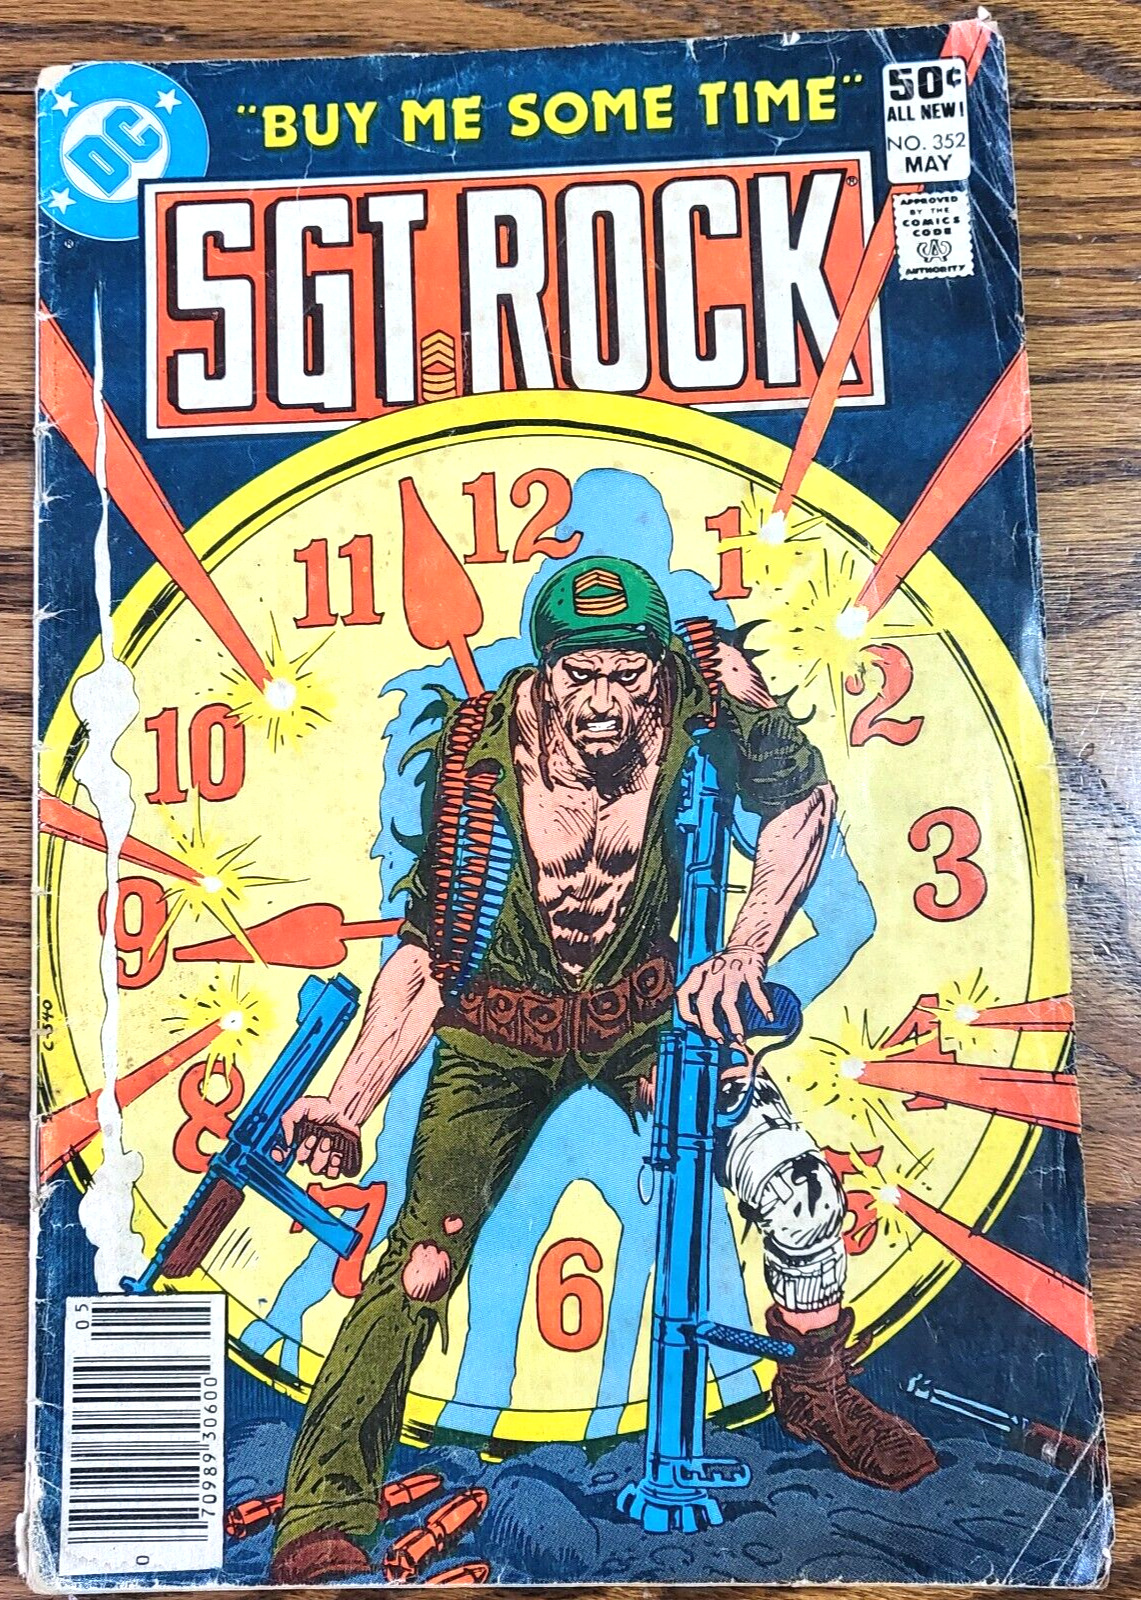 Sgt Rock #352 May 1981 DC Comics 